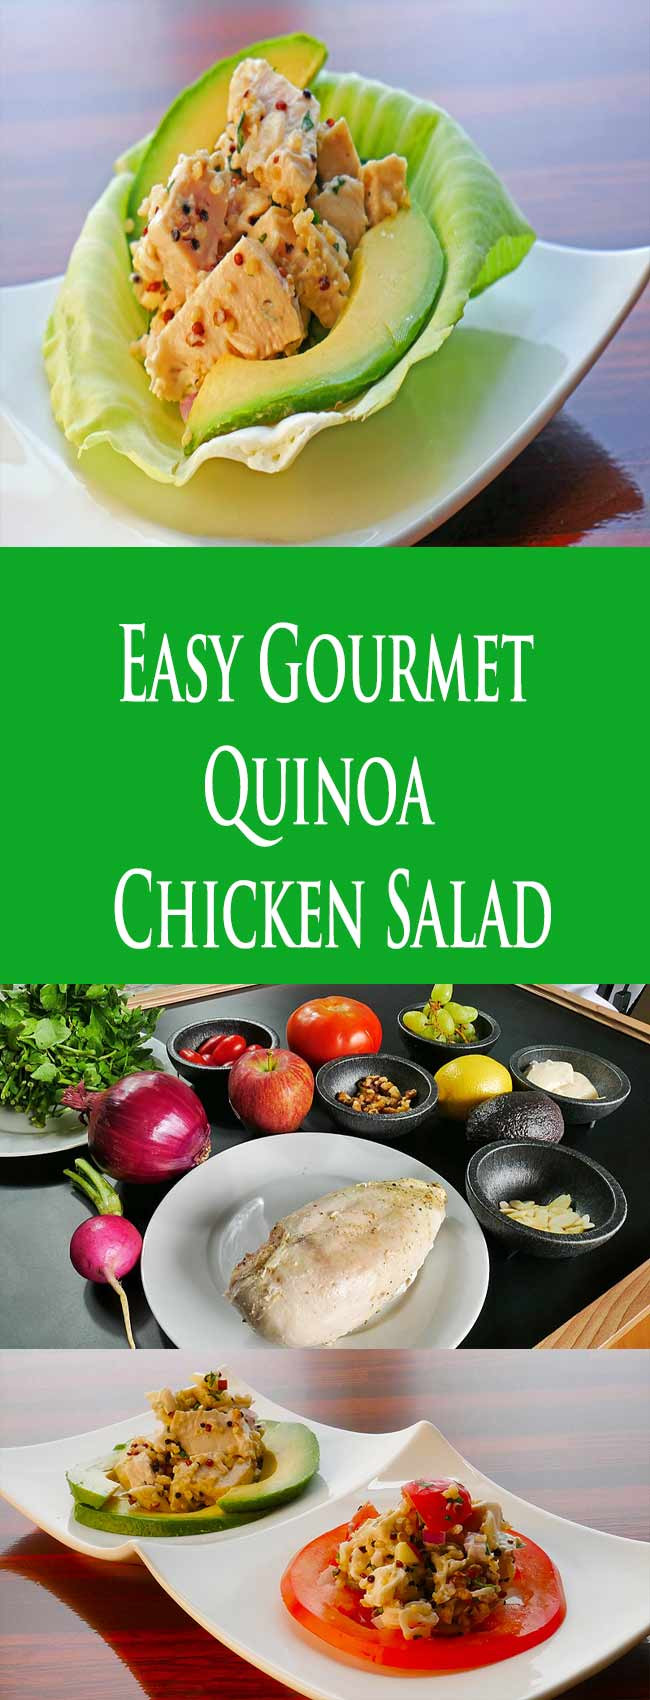 Gourmet Chicken Salad
 Quinoa Chicken Salad